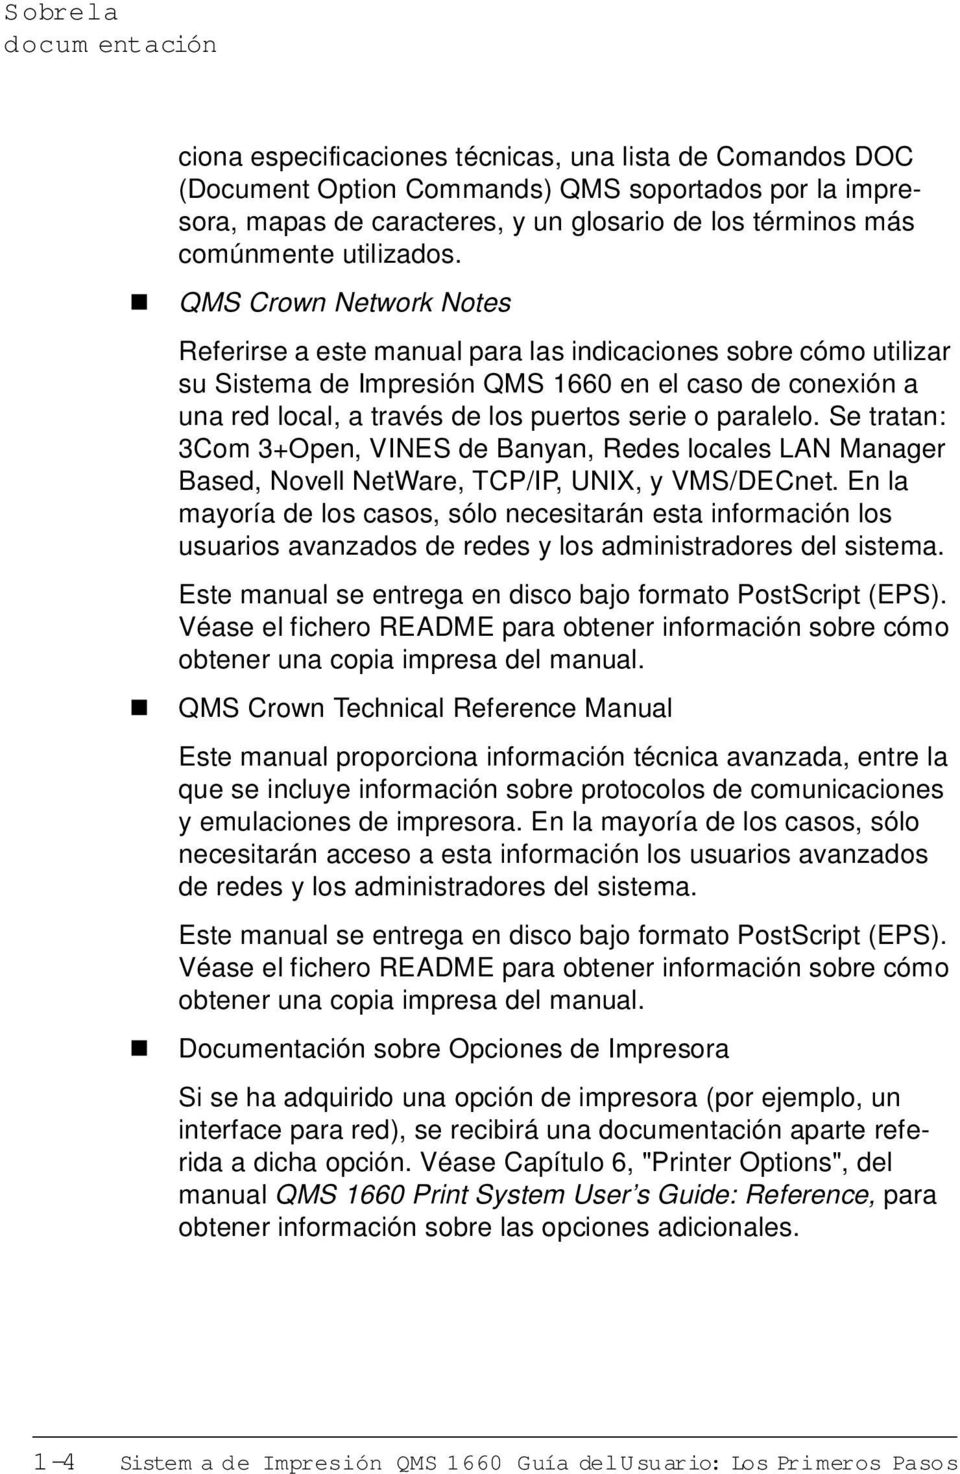 QMS Crow Network Notes Referirse a este maual para las idicacioes sobre cómo utilizar su Sistema de Impresió QMS 1660 e el caso de coexió a ua red local, a través de los puertos serie o paralelo.